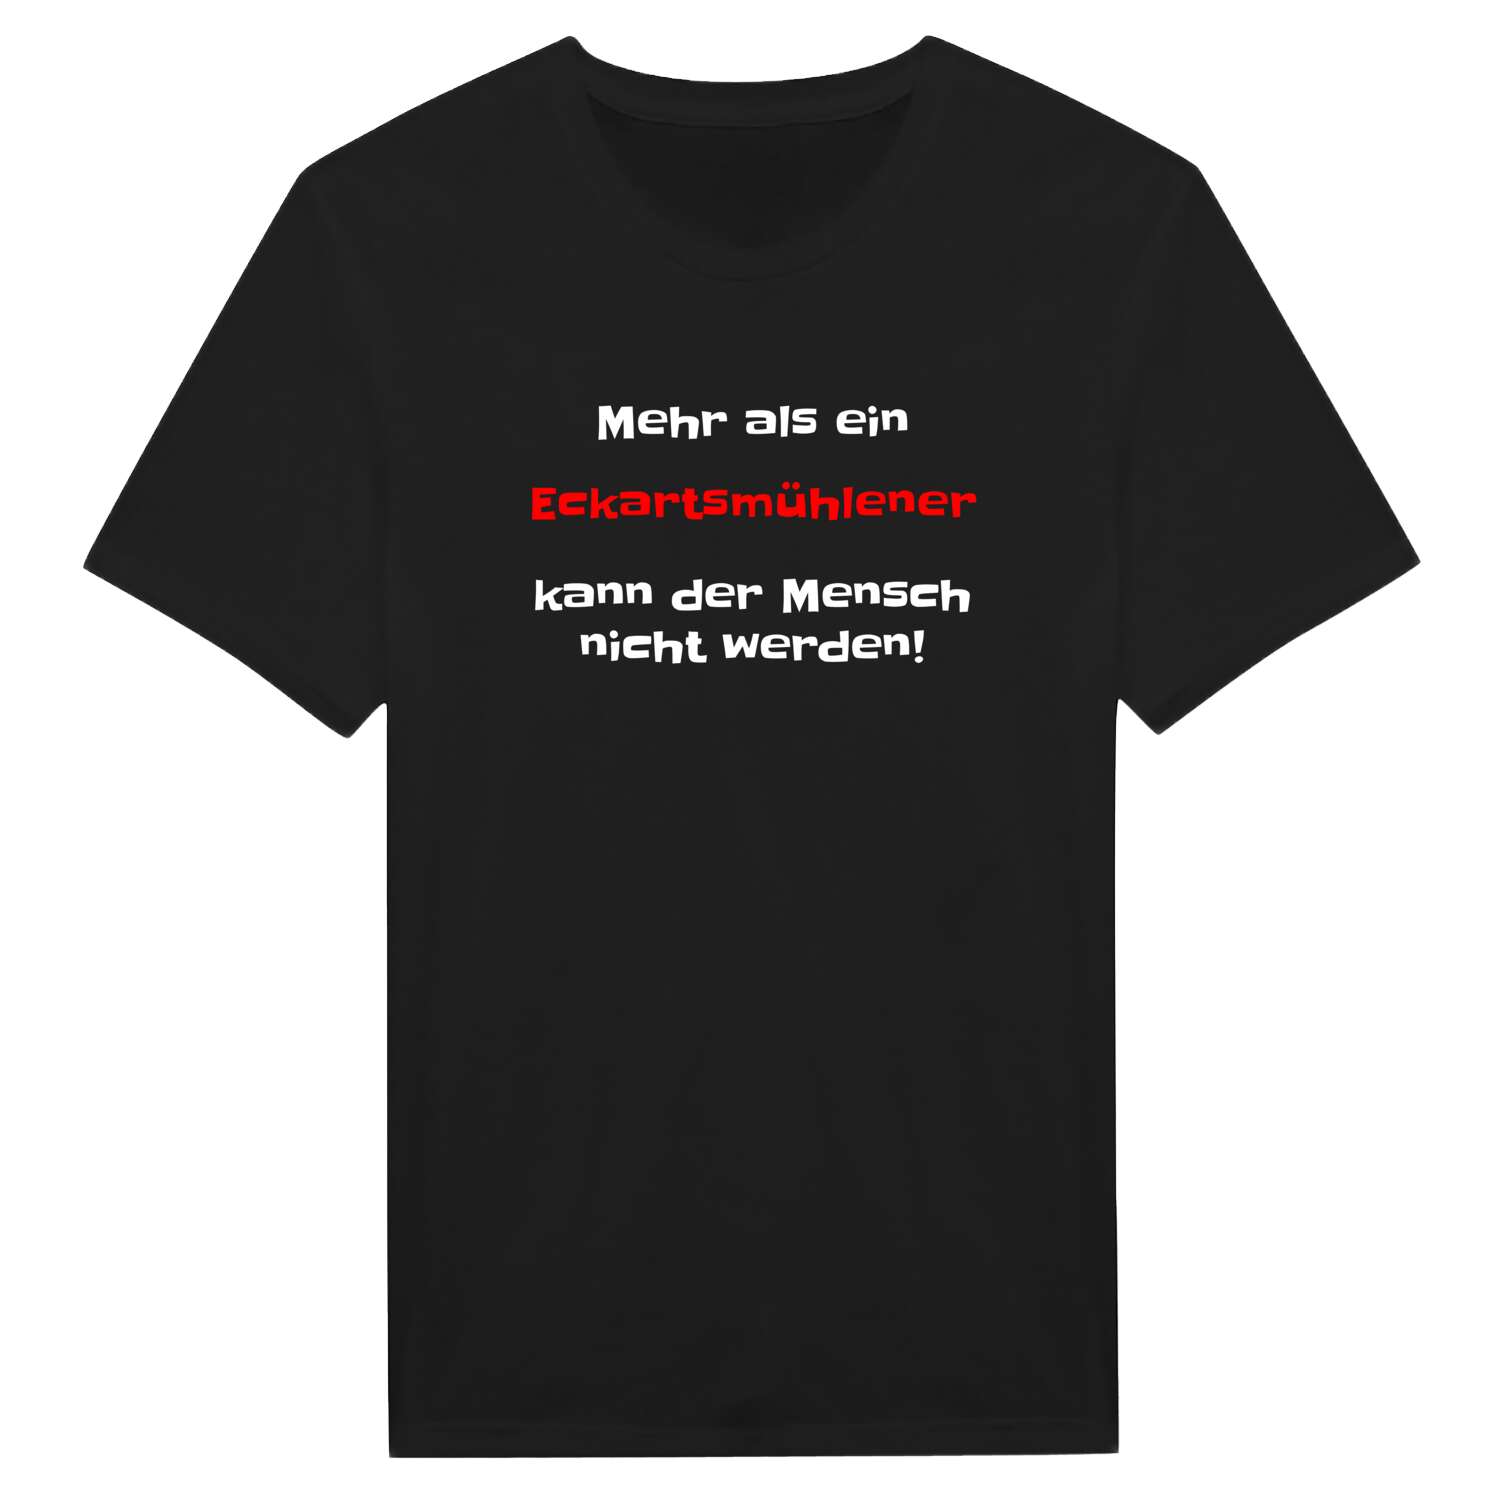 Eckartsmühle T-Shirt »Mehr als ein«